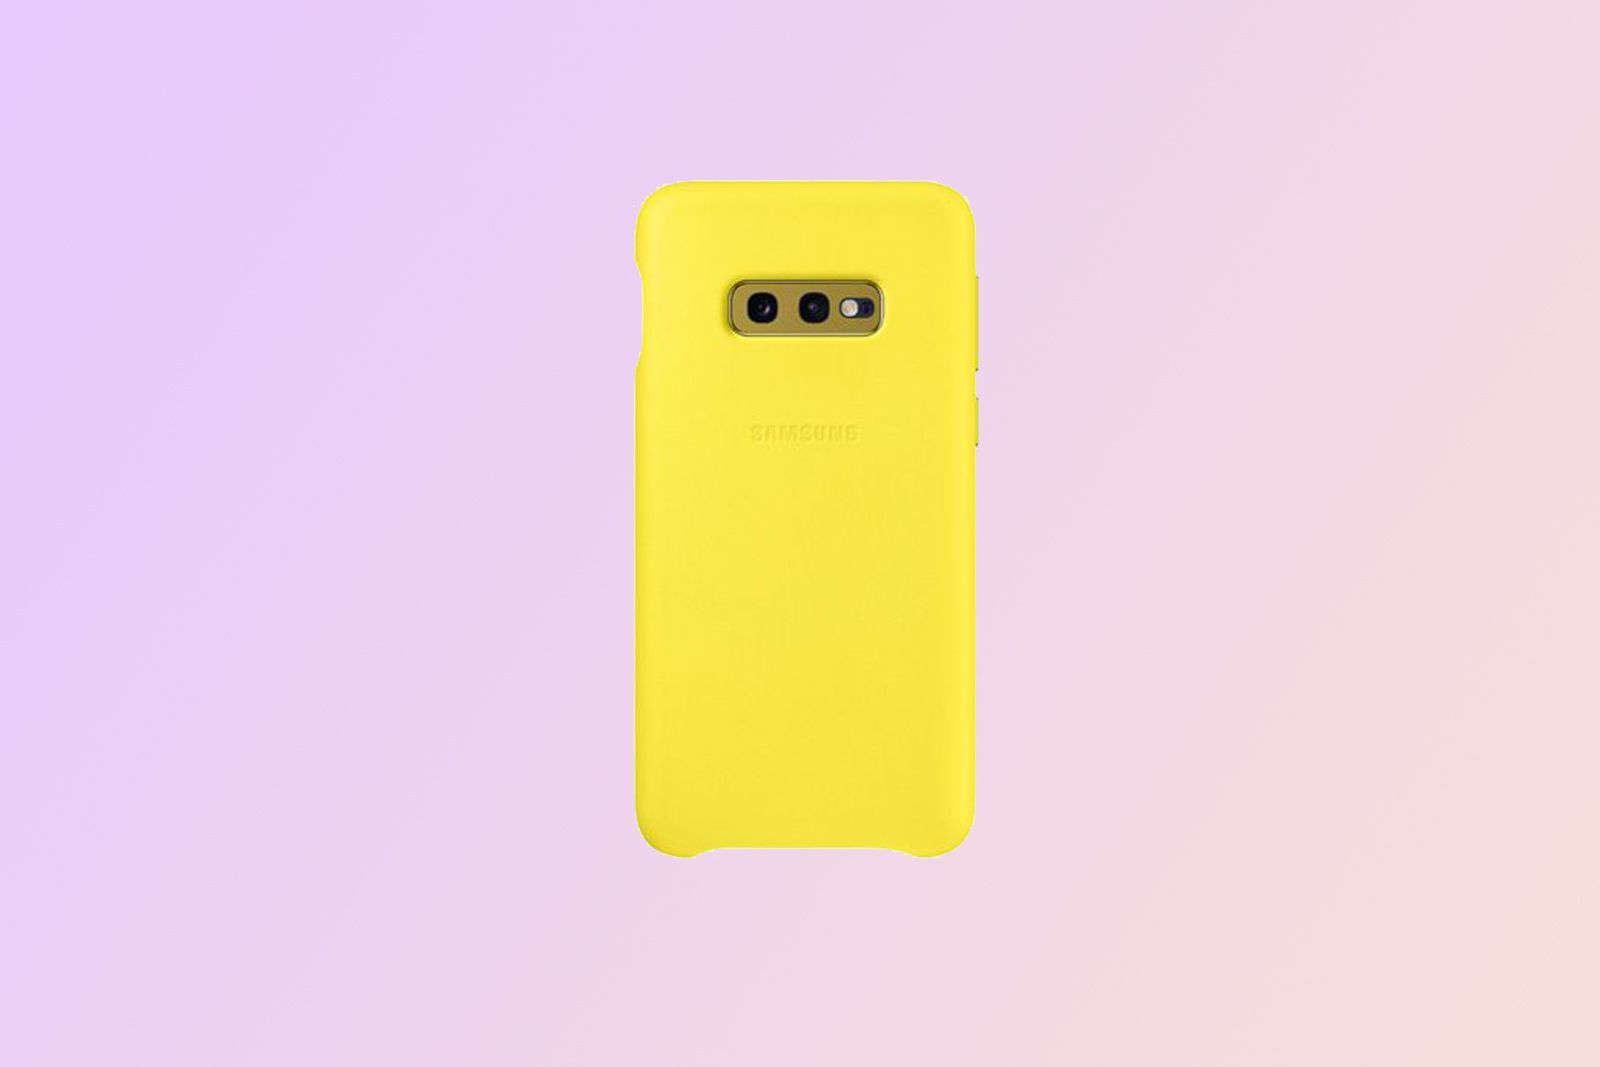 Funda impermeable amarilla para teléfono celular, adecuada para Samsung  Galaxy S10e, S10, S10+ A50, A60, Xcover 4s, M40, A20e, A20, A40, A30, A10